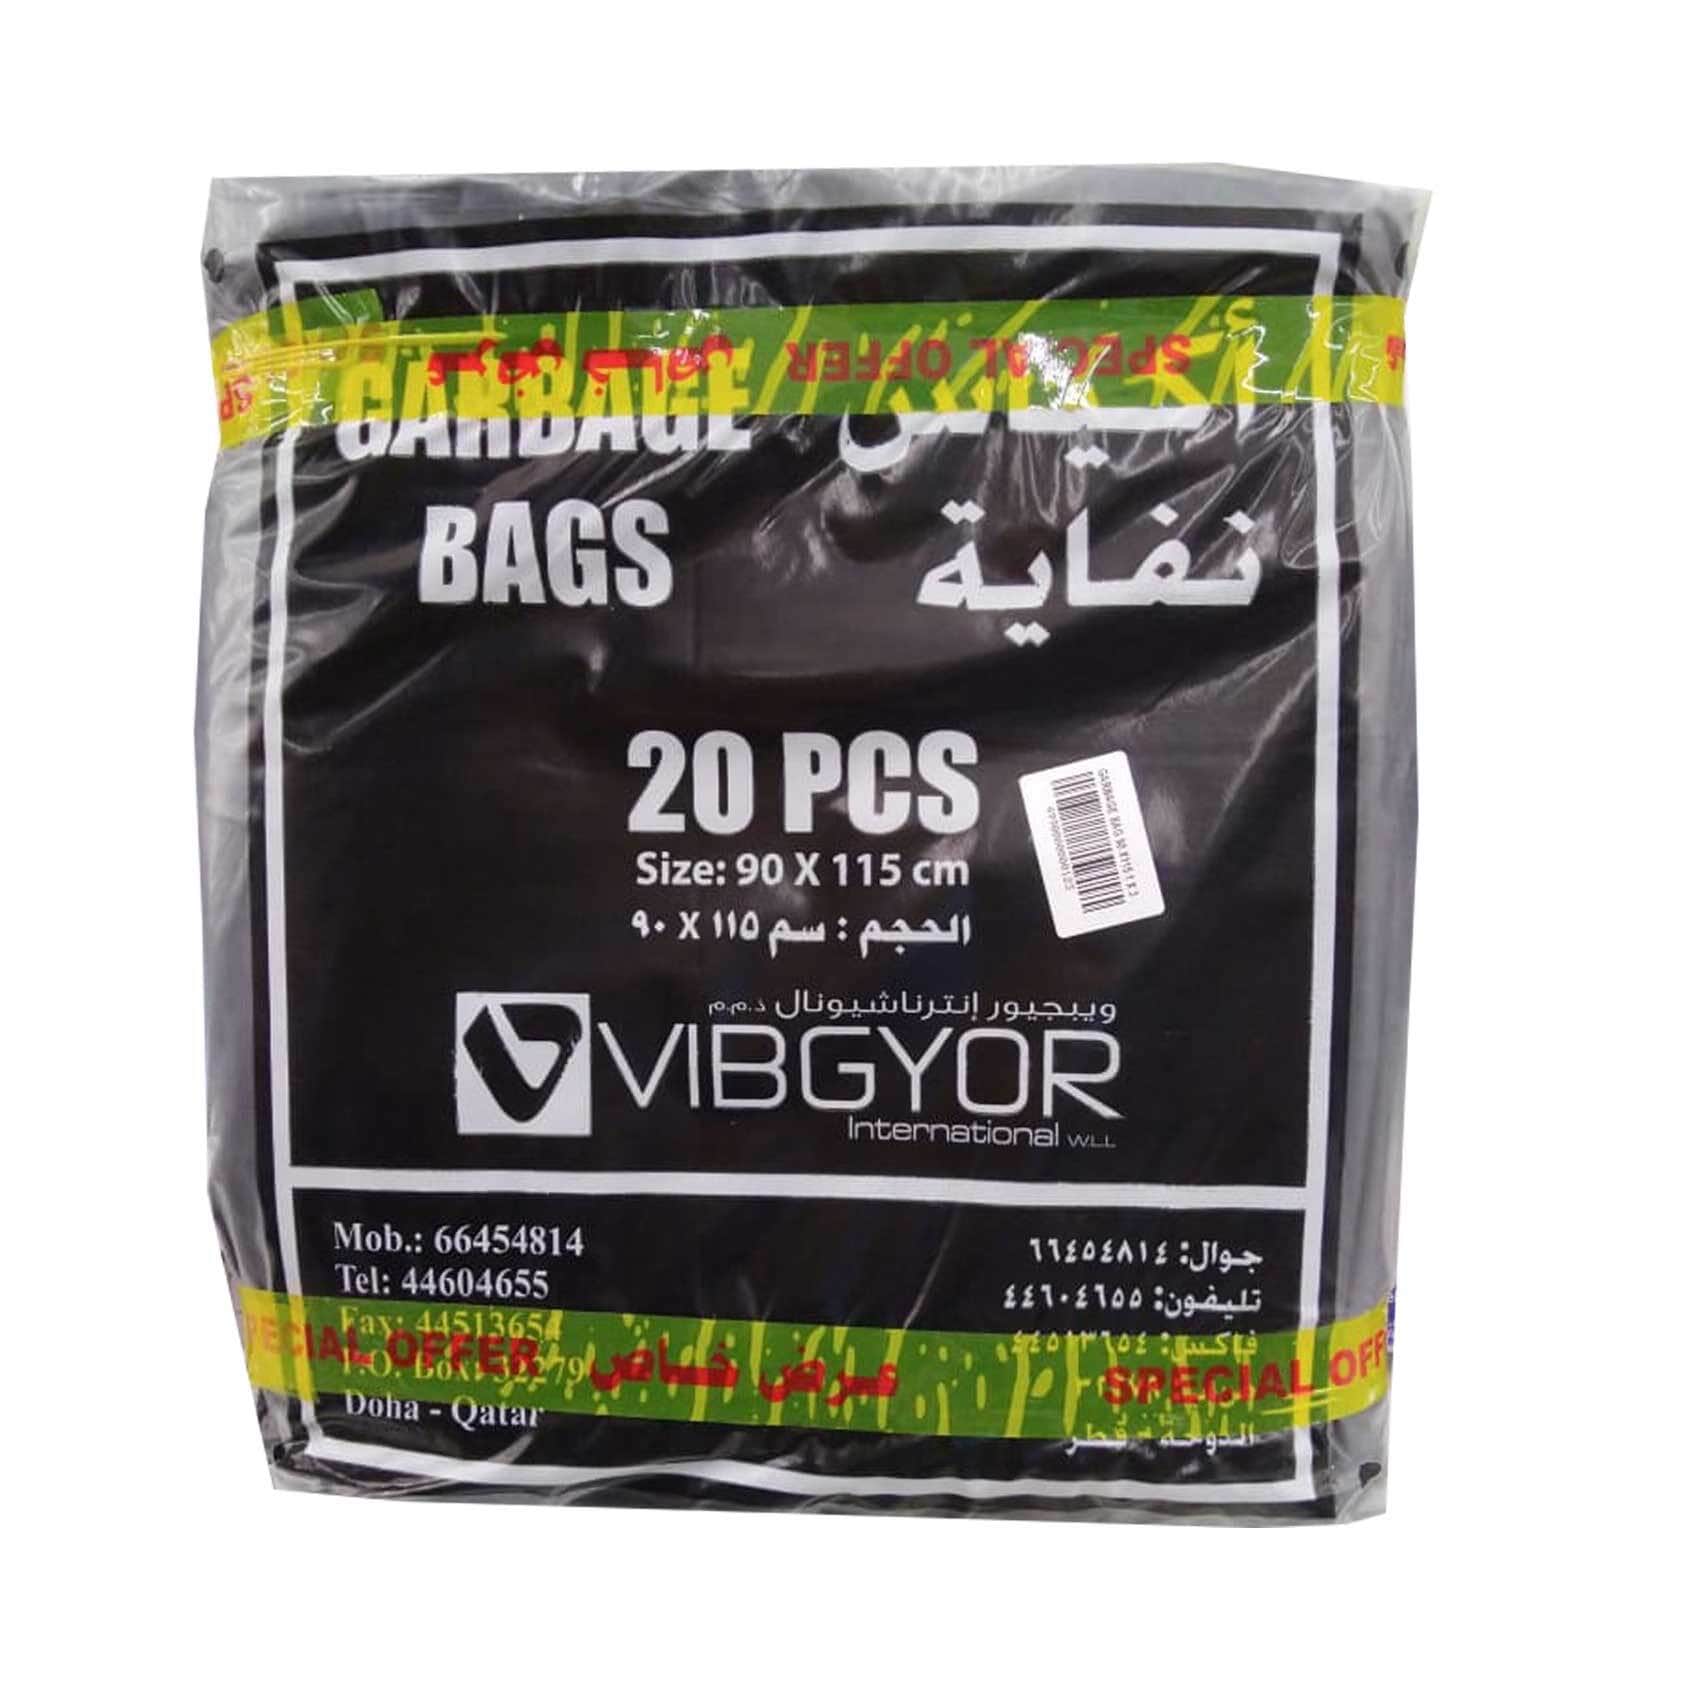 Buy Sanita Club Biodegradable Garbage Bags, 70 Gallons, 10 Bags